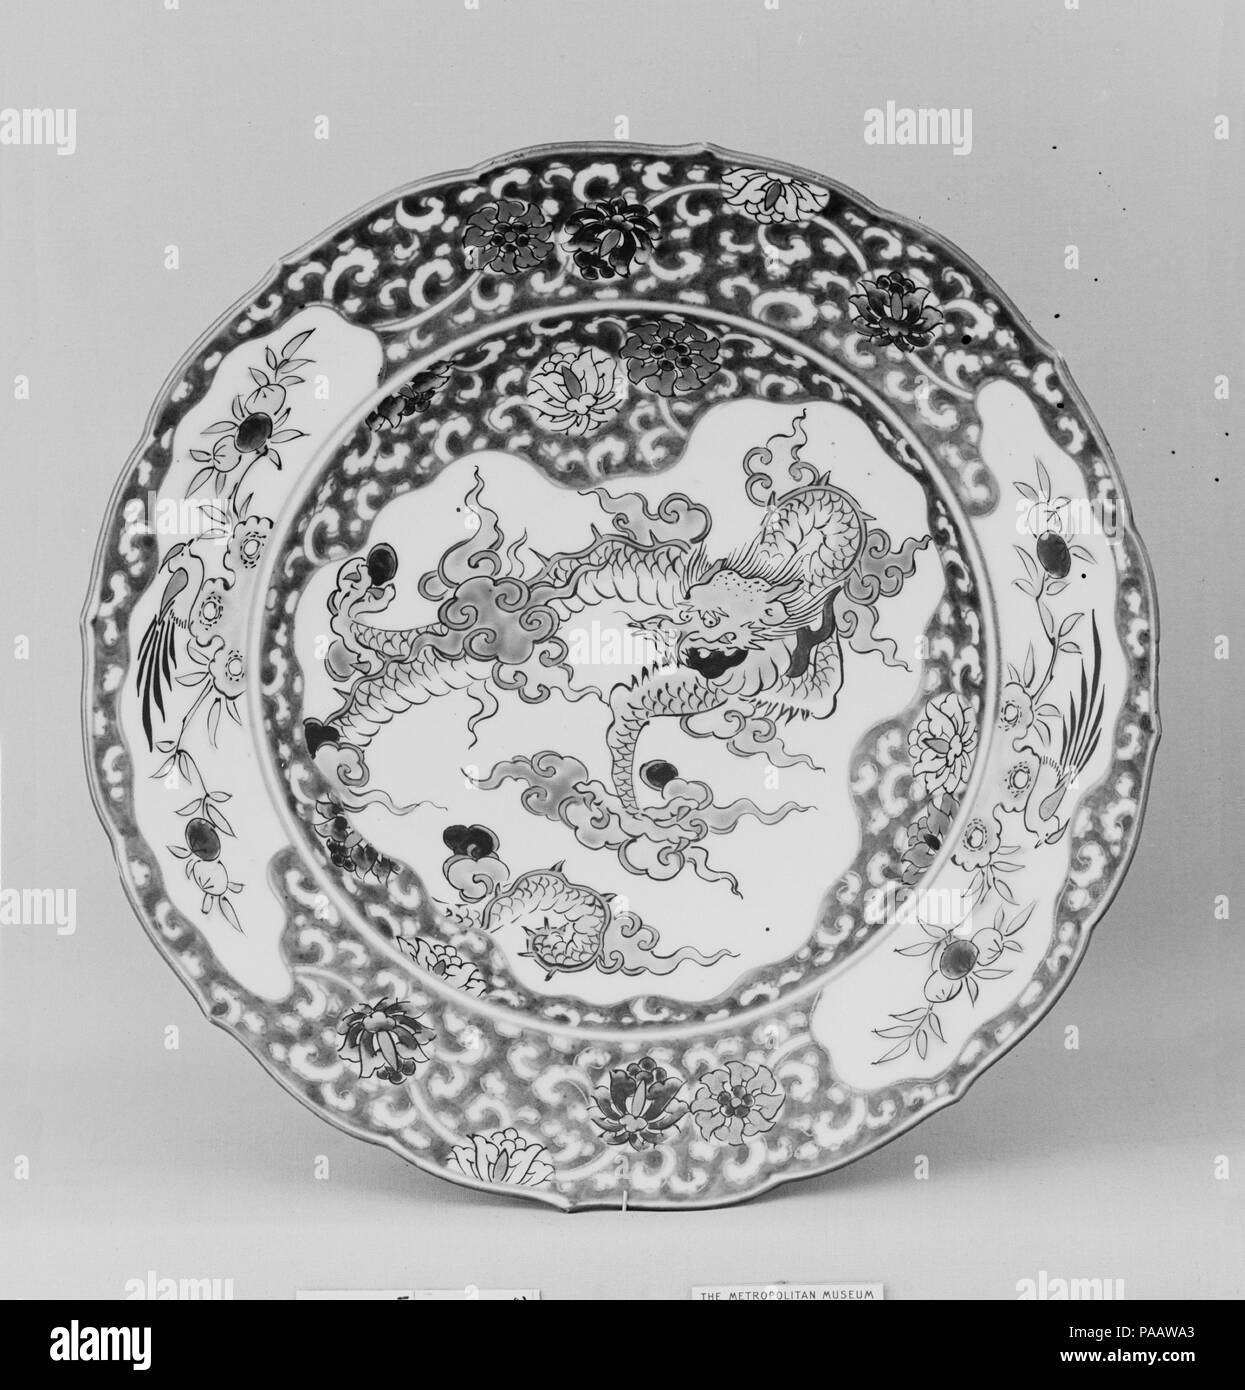 Plate. Culture: Japan. Dimensions: Diam. 9 1/4 in. (23.5 cm). Date: ca. 1800. Museum: Metropolitan Museum of Art, New York, USA. Stock Photo